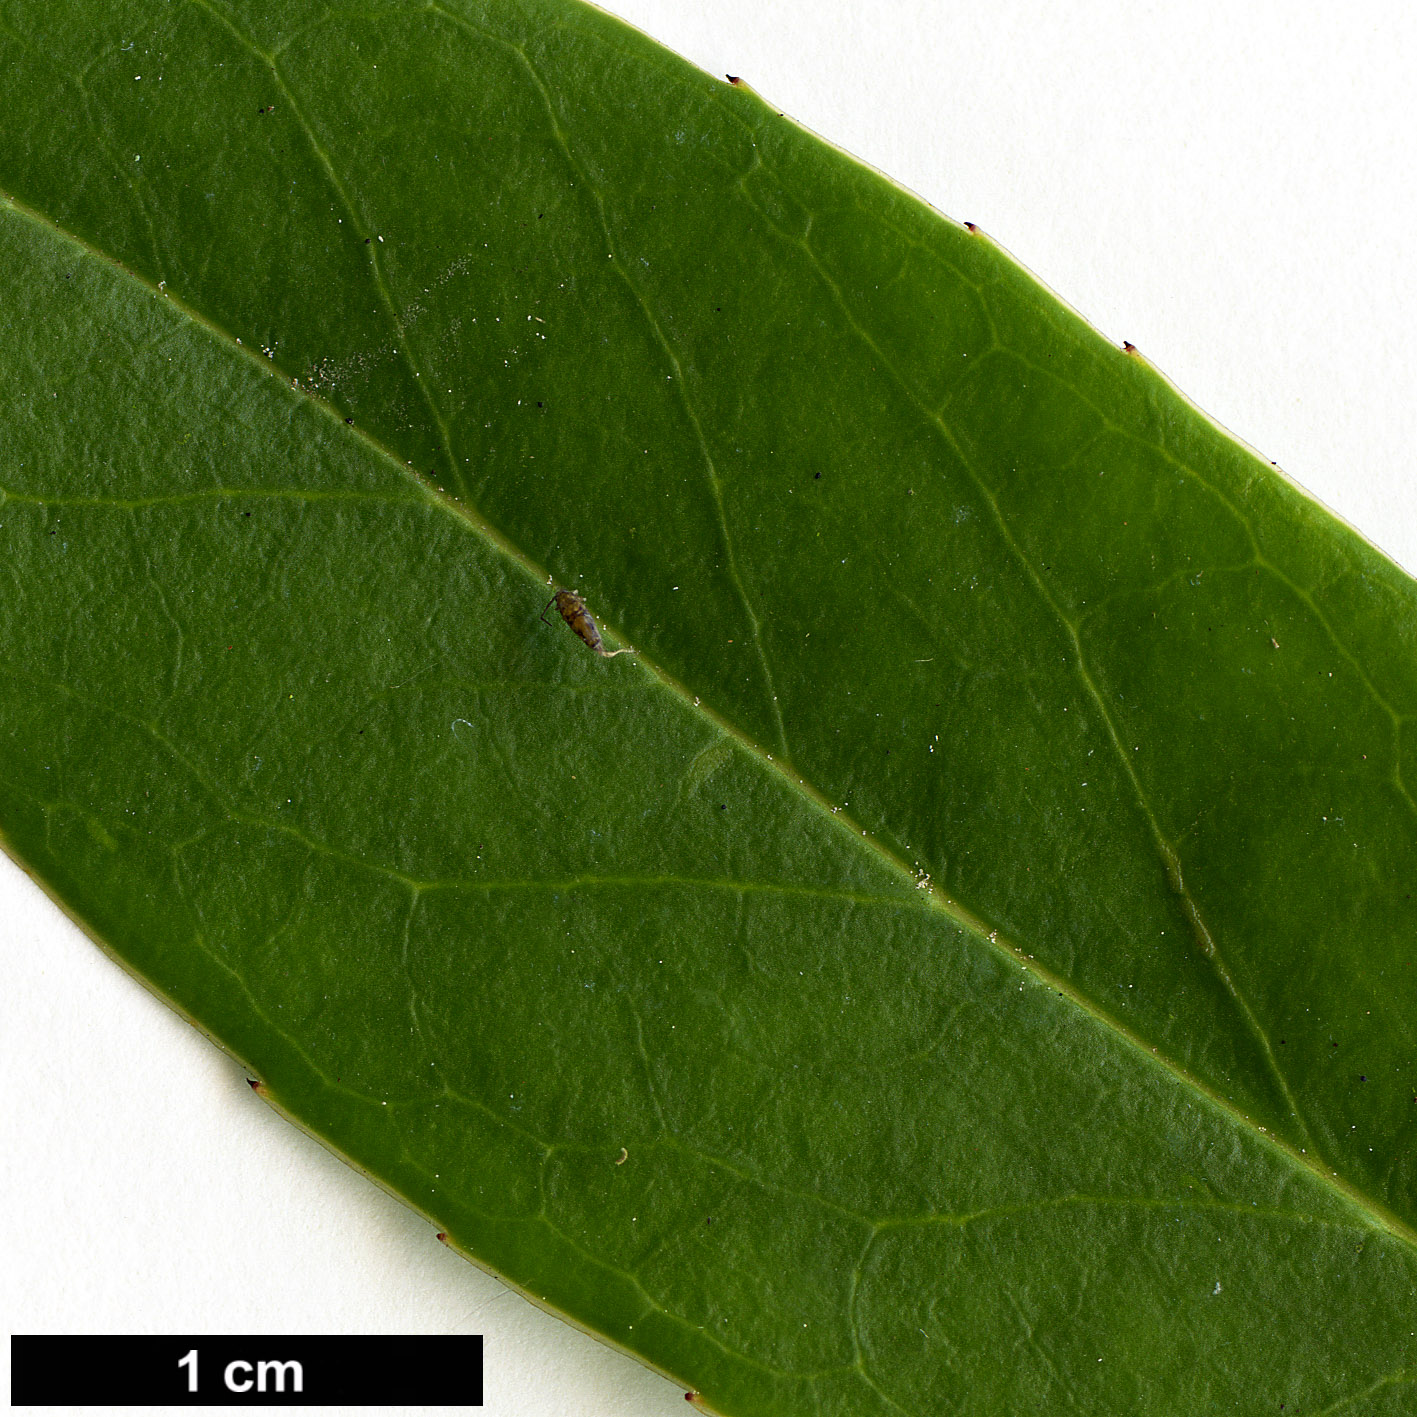 High resolution image: Family: Aquifoliaceae - Genus: Ilex - Taxon: fargesii - SpeciesSub: subsp. fargesii